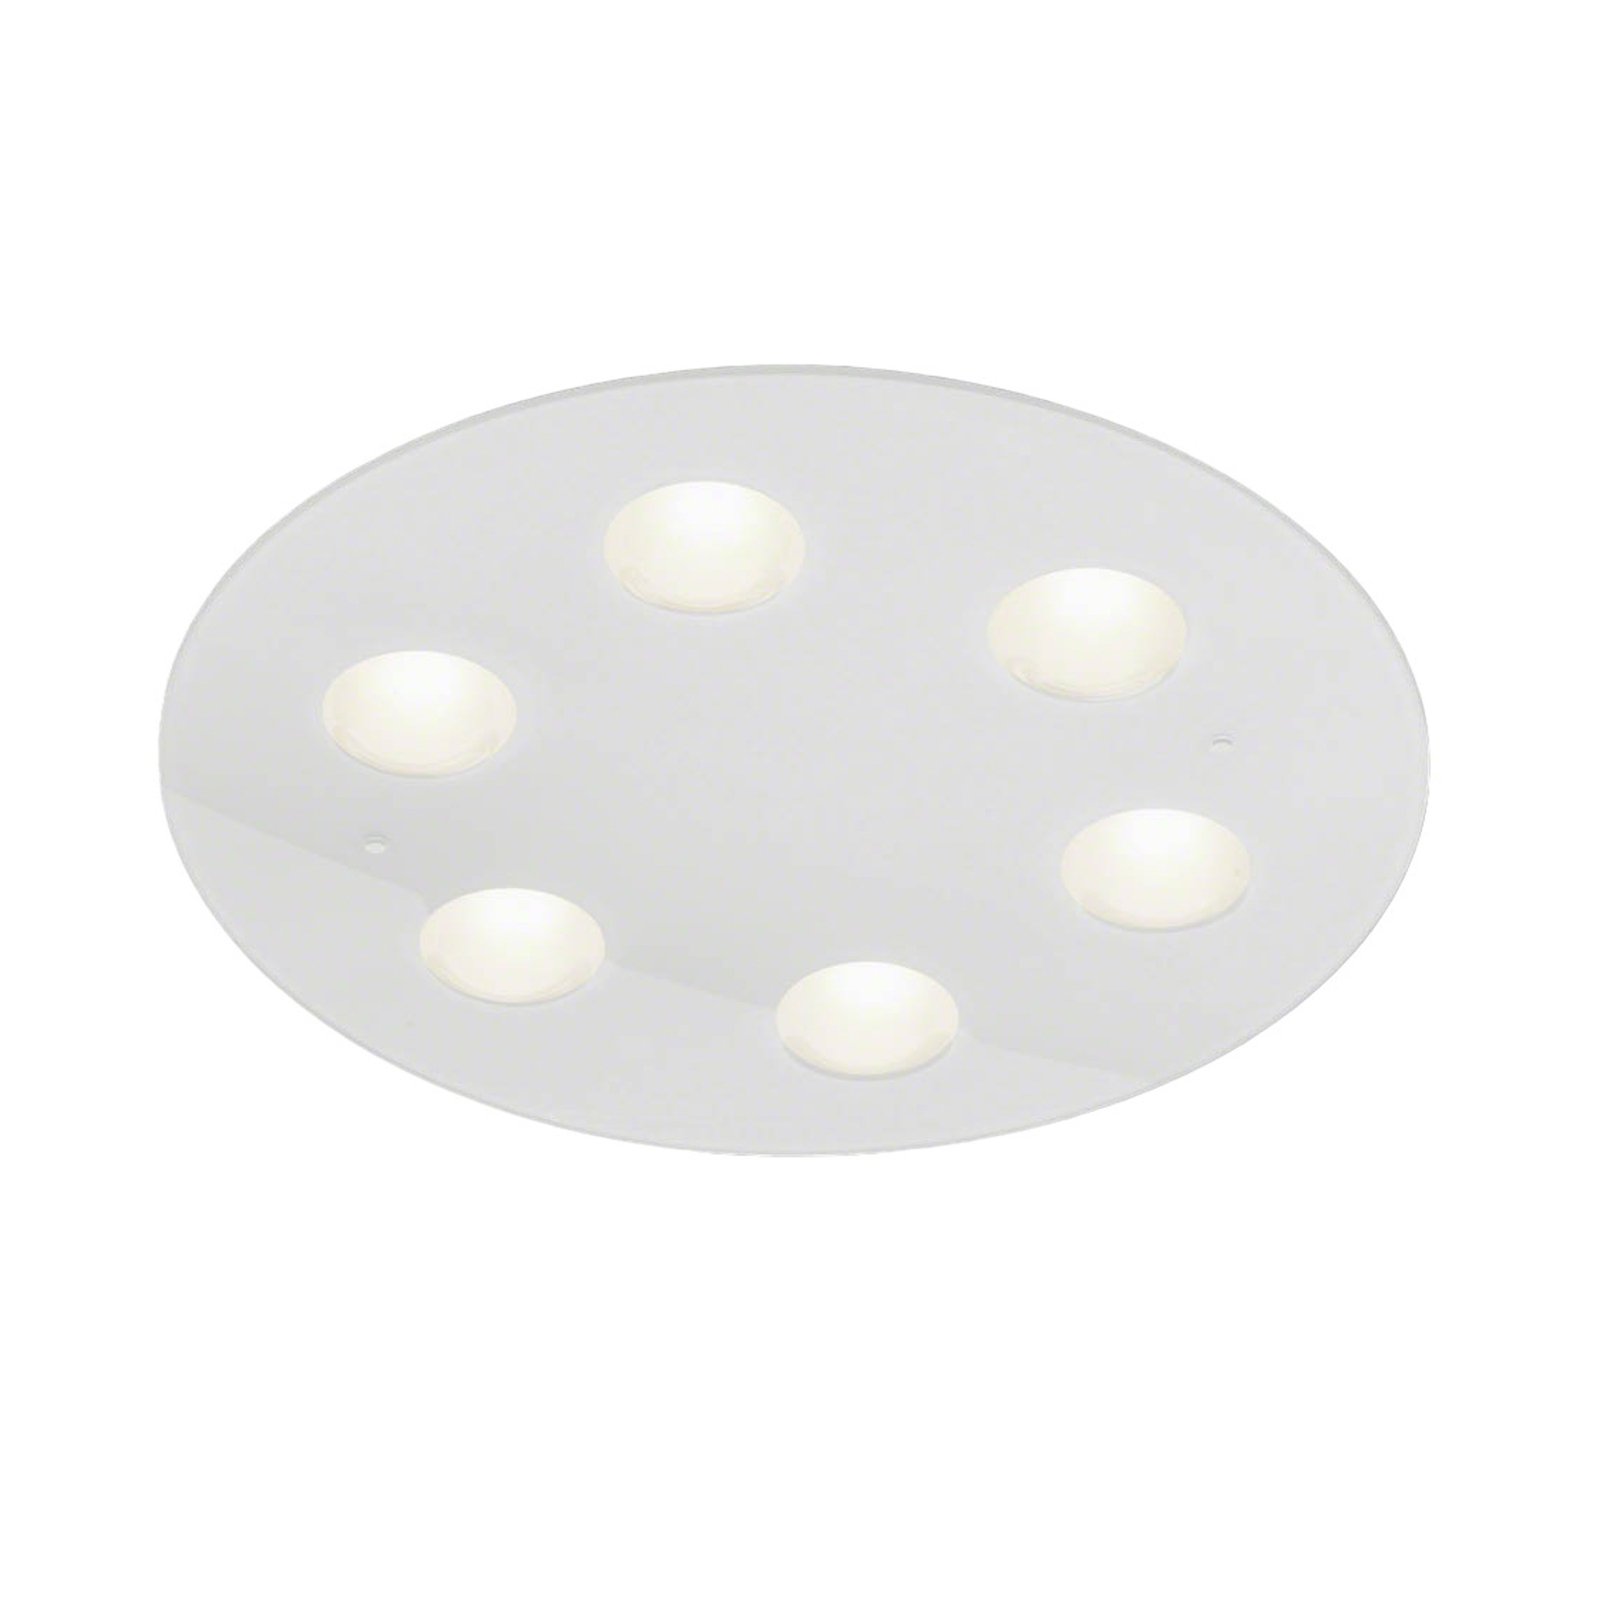 Helestra Nomi LED ceiling light Ø 49 cm dim white